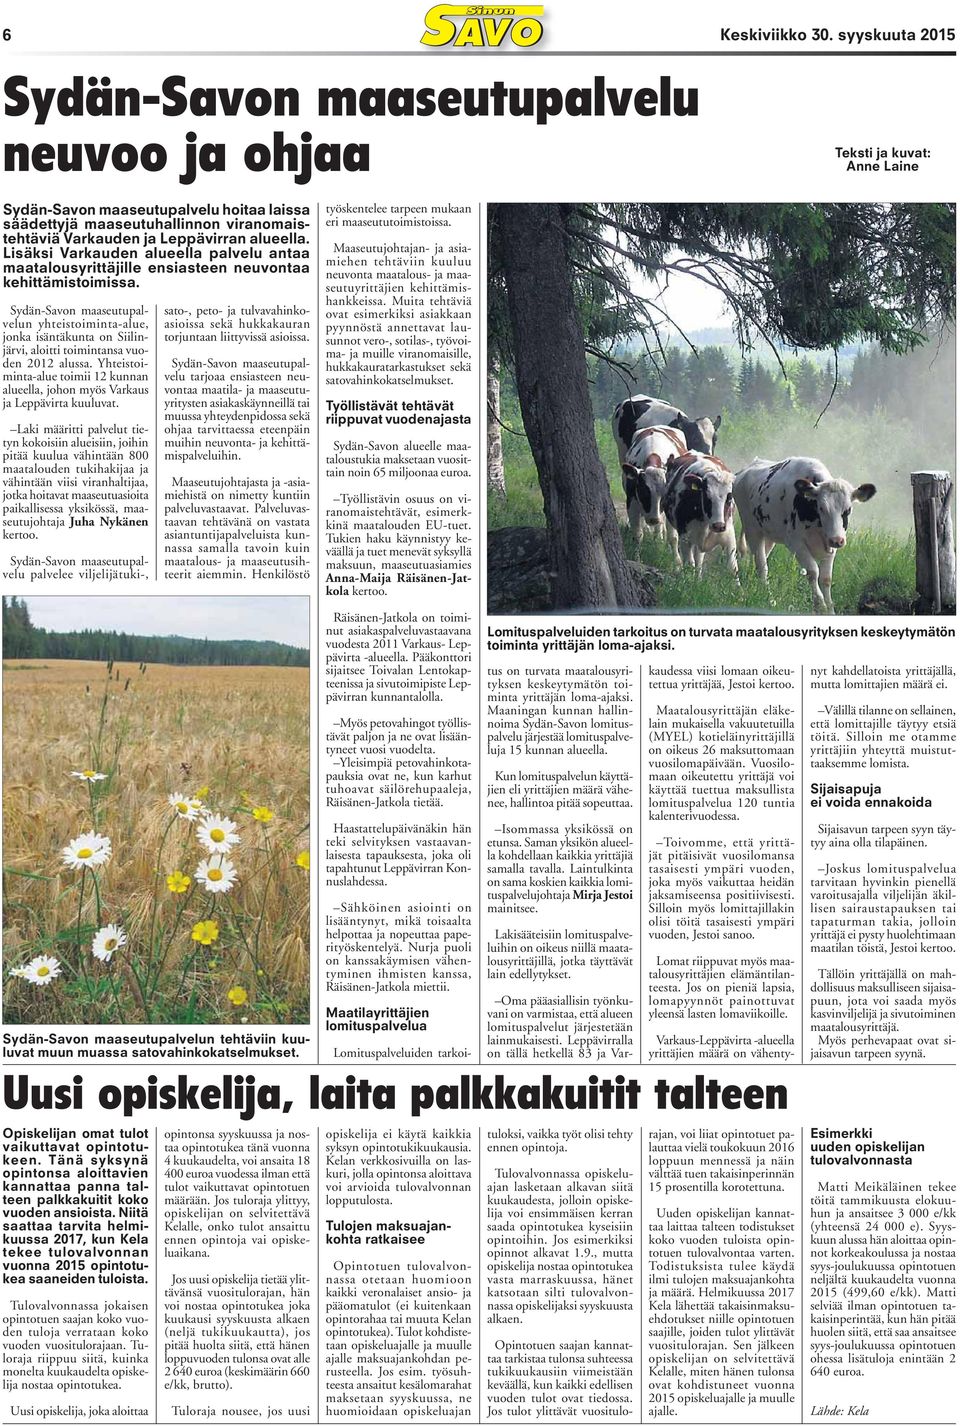 Sydän-Savon maaseutupalvelun yhteistoiminta-alue, jonka isäntäkunta on Siilinjärvi, aloitti toimintansa vuoden 2012 alussa.